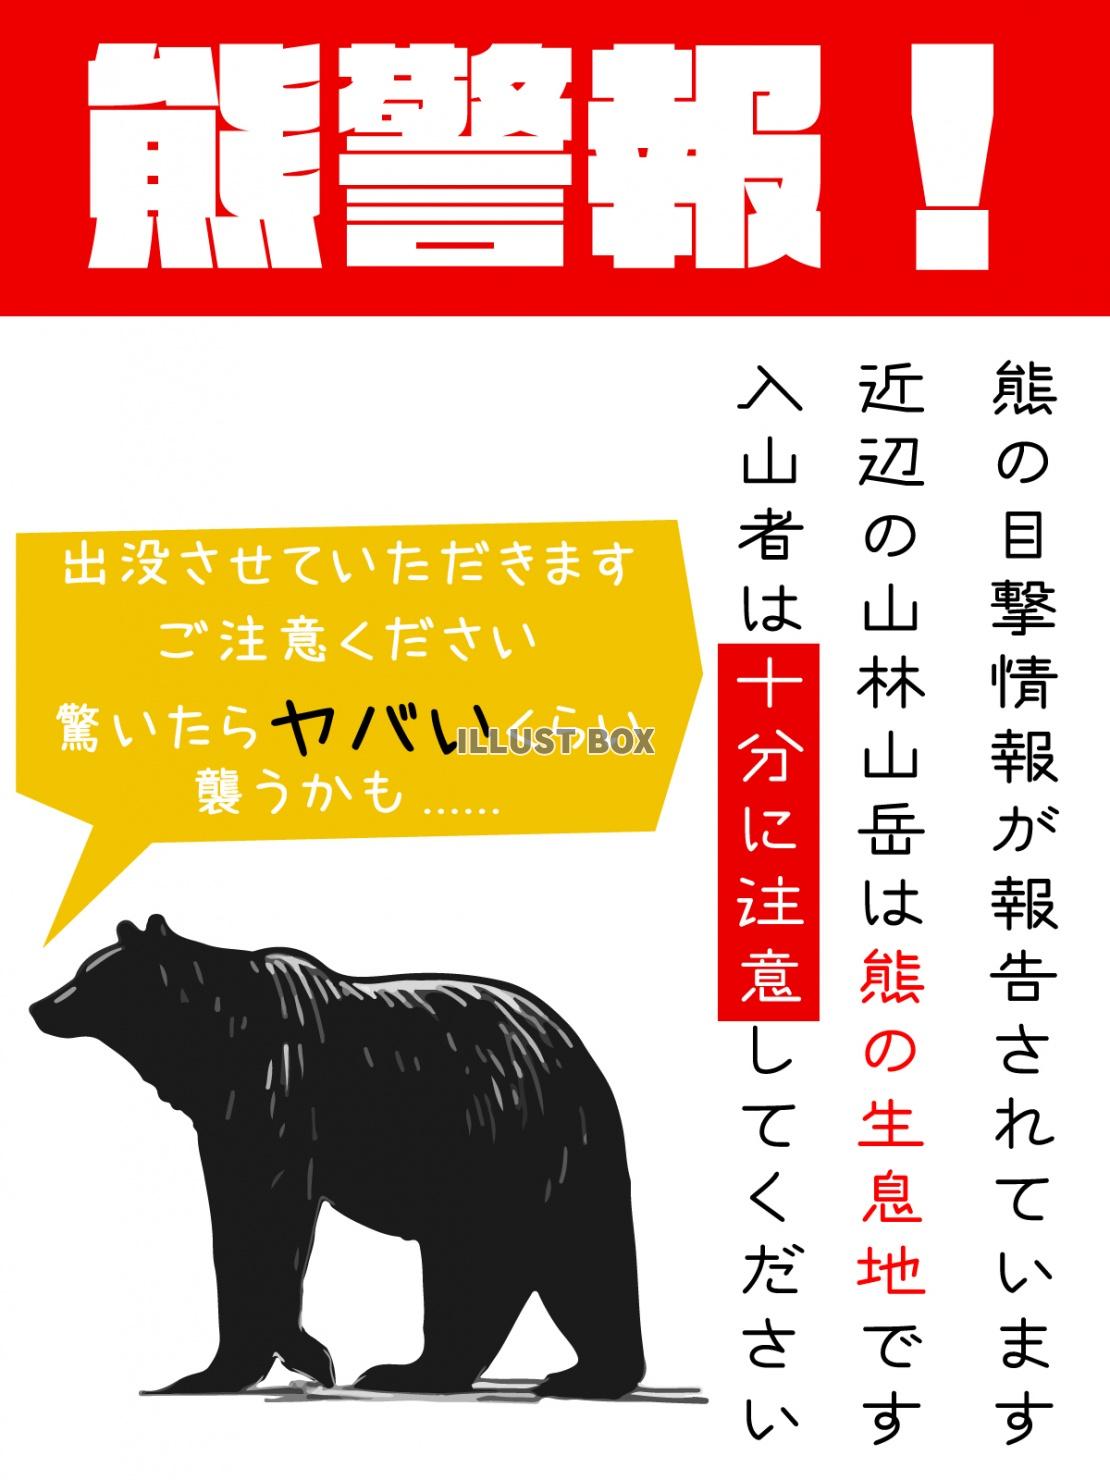 熊警報、注意喚起のポスターデザイン縦型